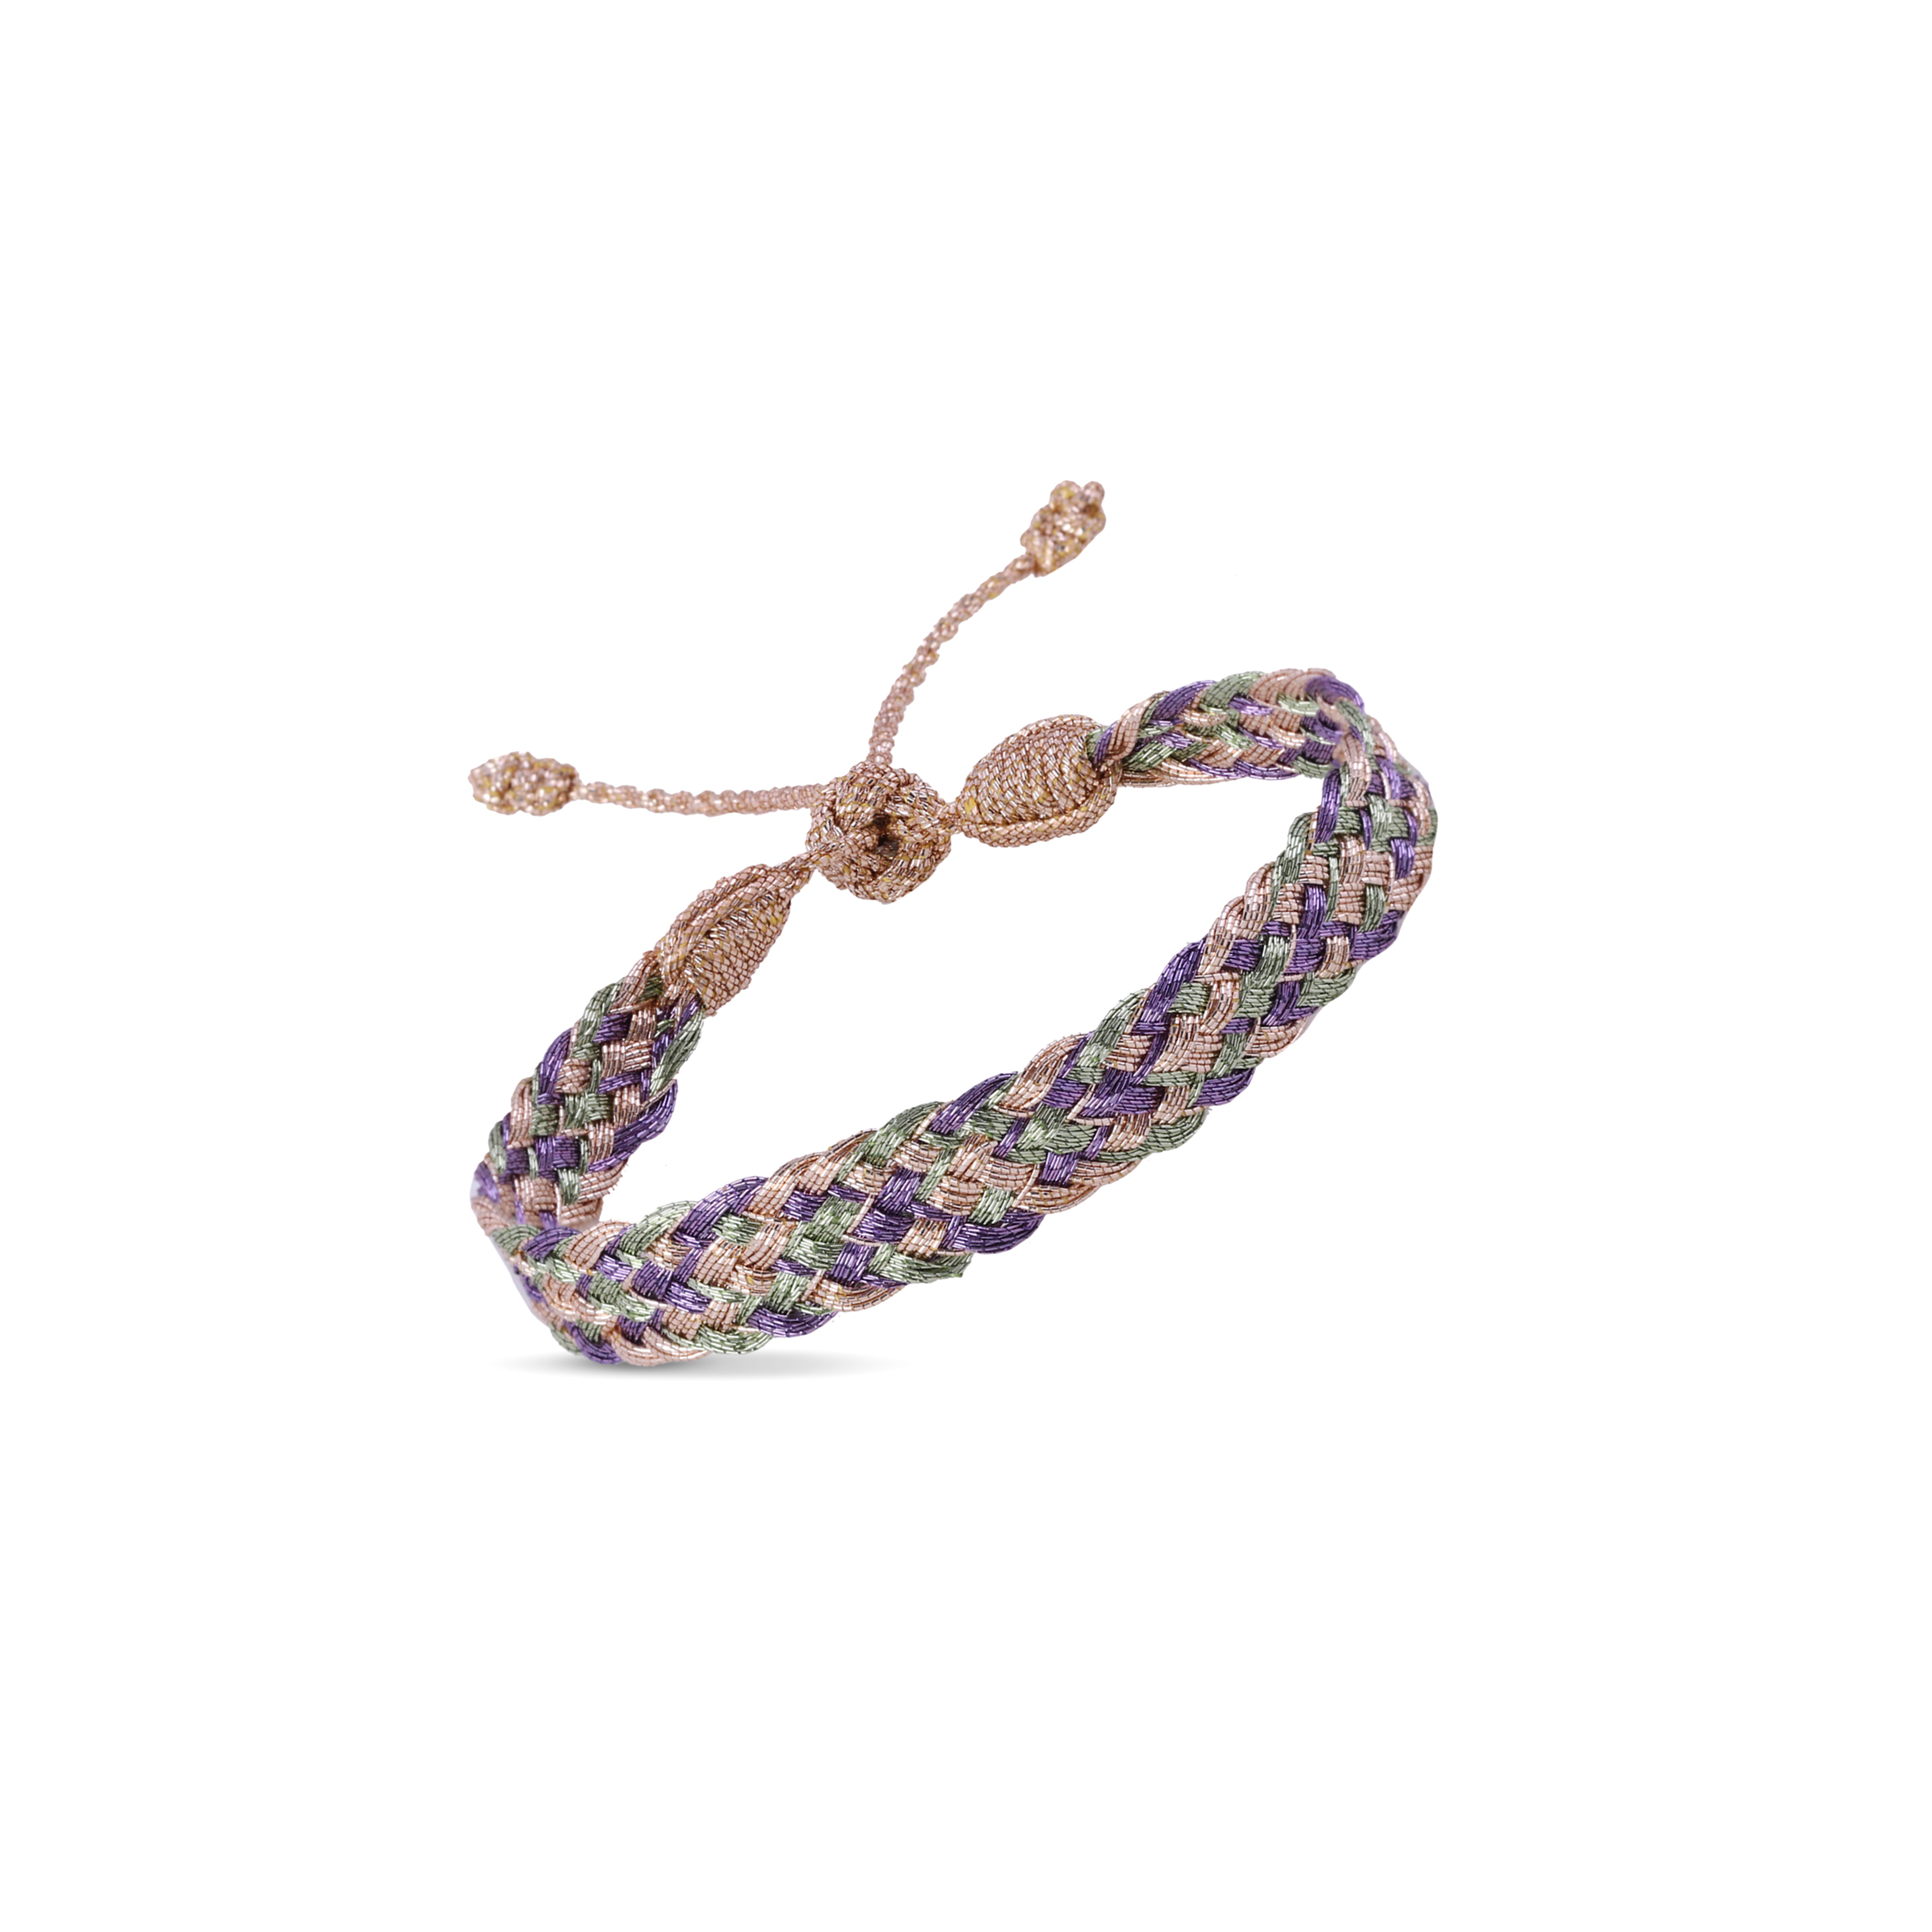 Box n°2 Bracelet in Lavender Pistachio